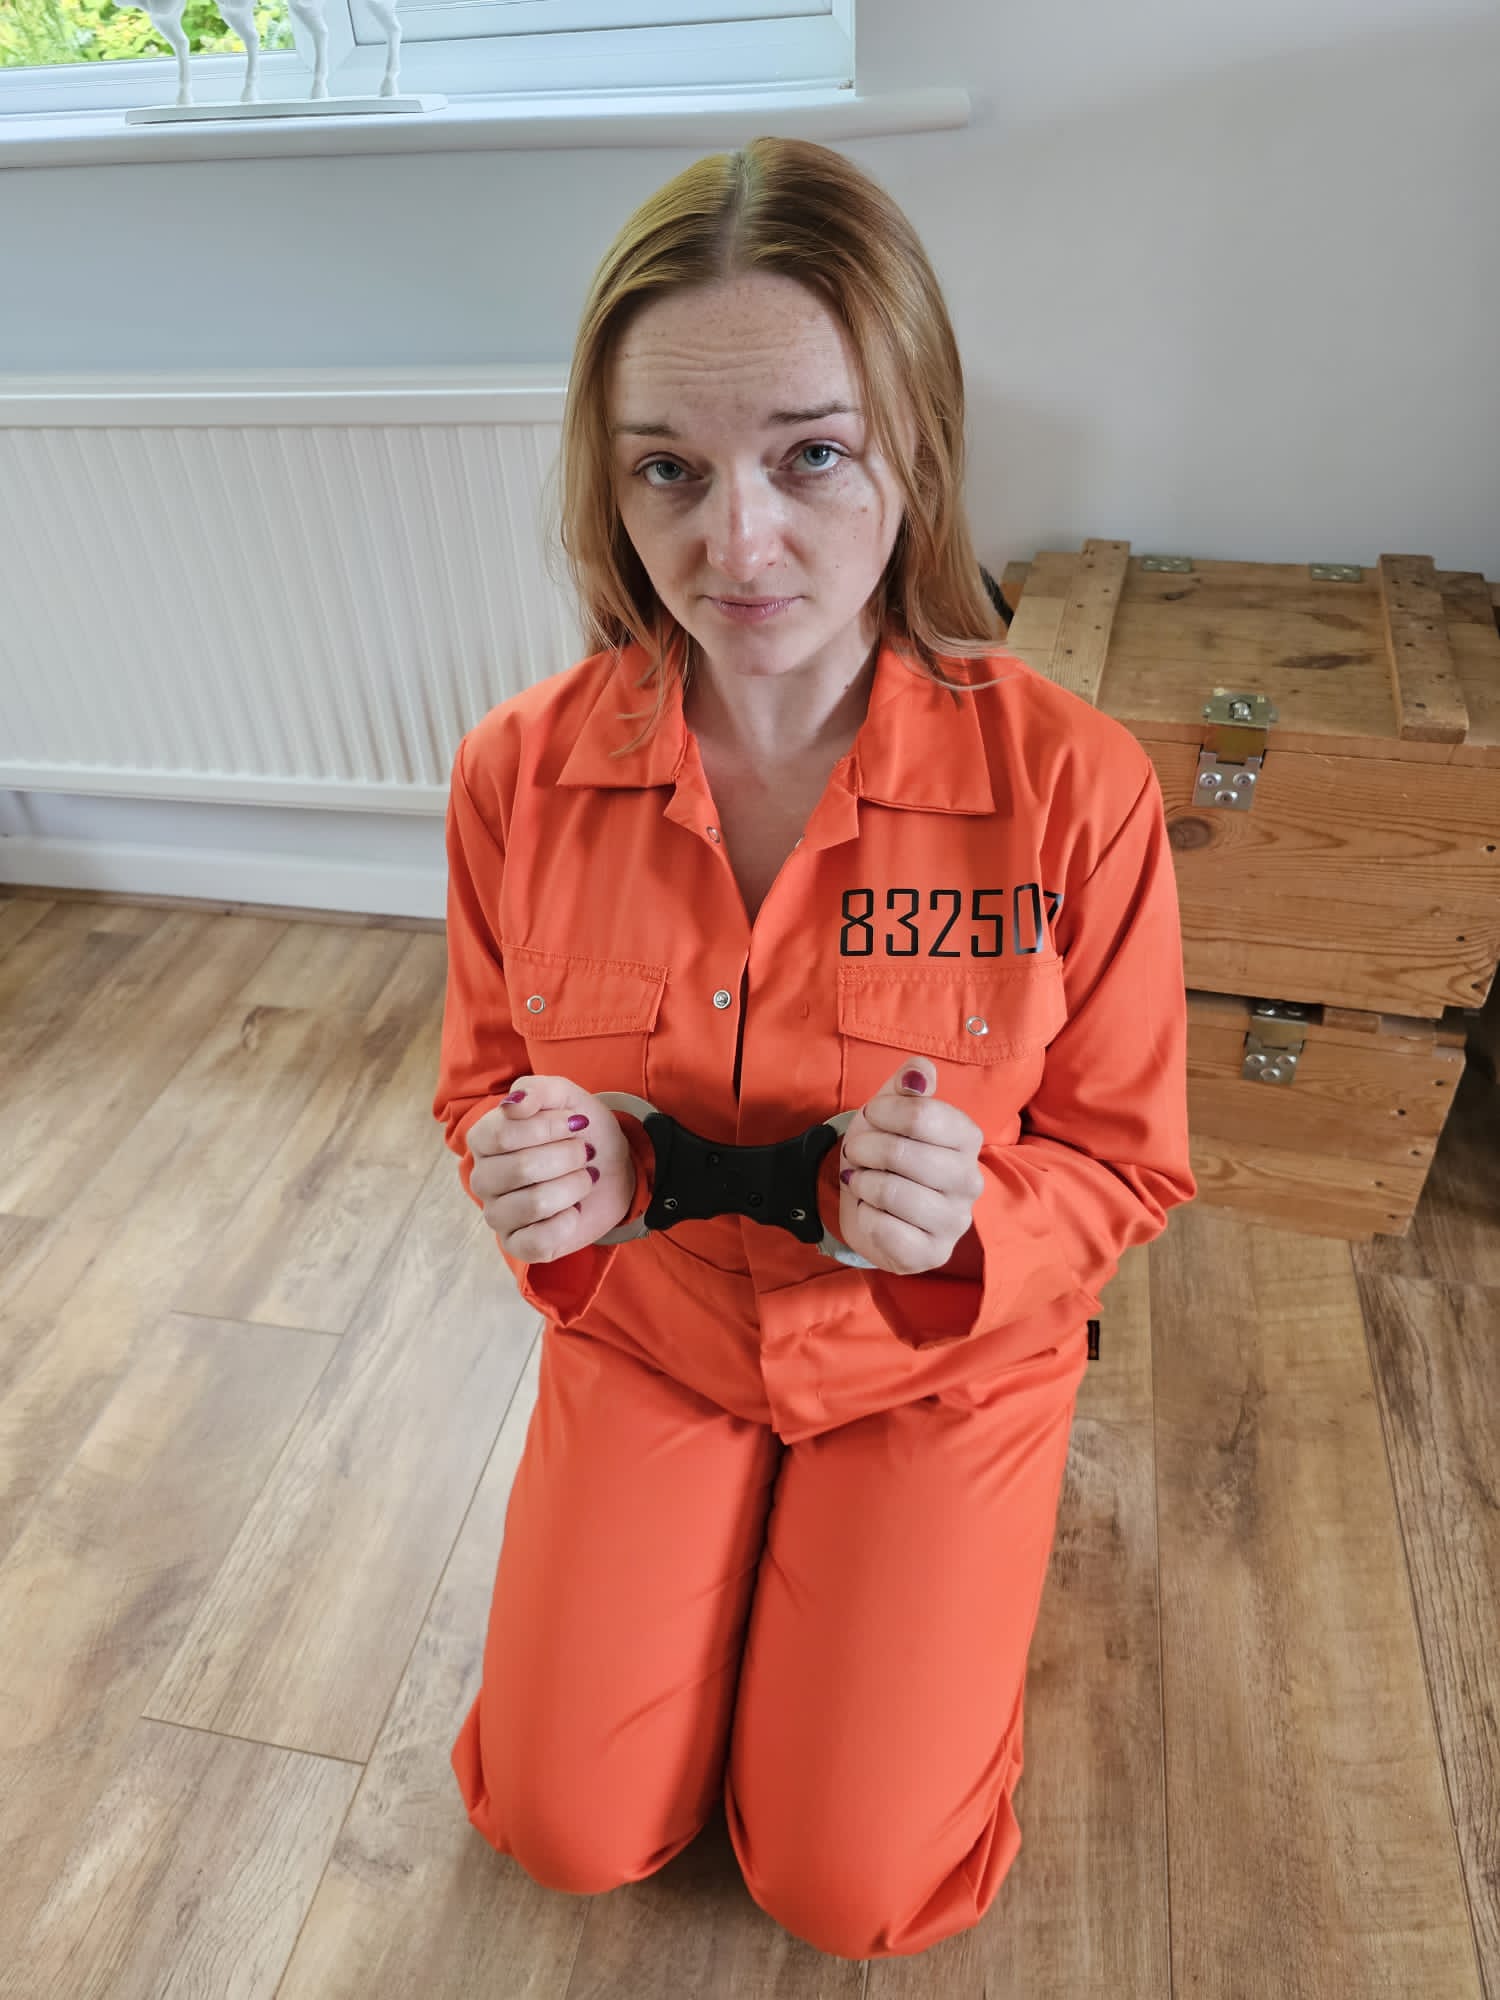 Prisoner Orange Jumpsuit With Neck Collar Restraining / BDSM / Prison /  Fetish / Imprisonment / Bondage / Leather Collar / for Inmate ABDL - Etsy